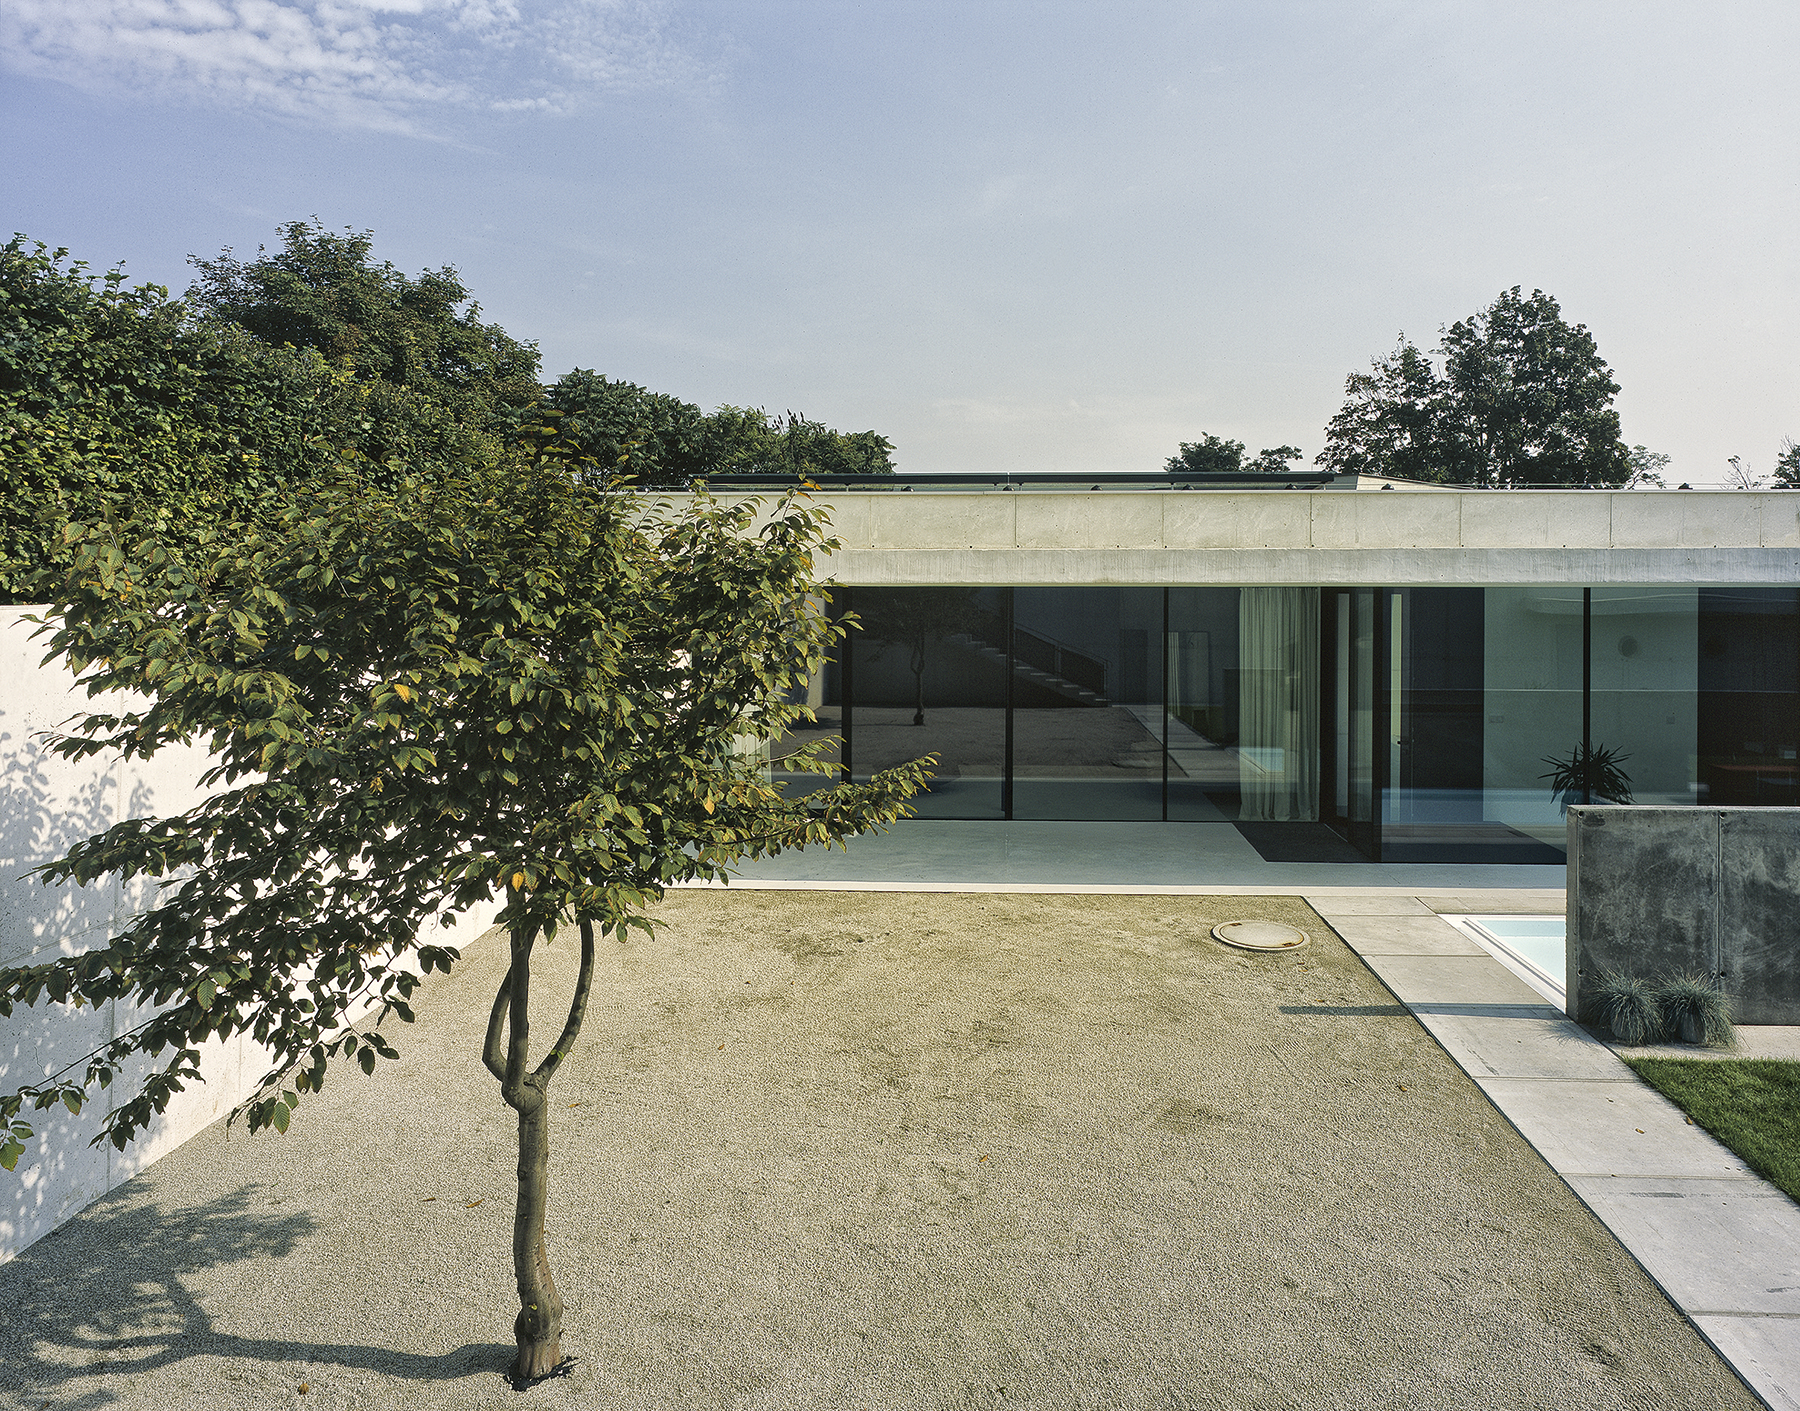 Materiálově se na stavbě uplatnila elegantní kombinace bílého betonu a skla.